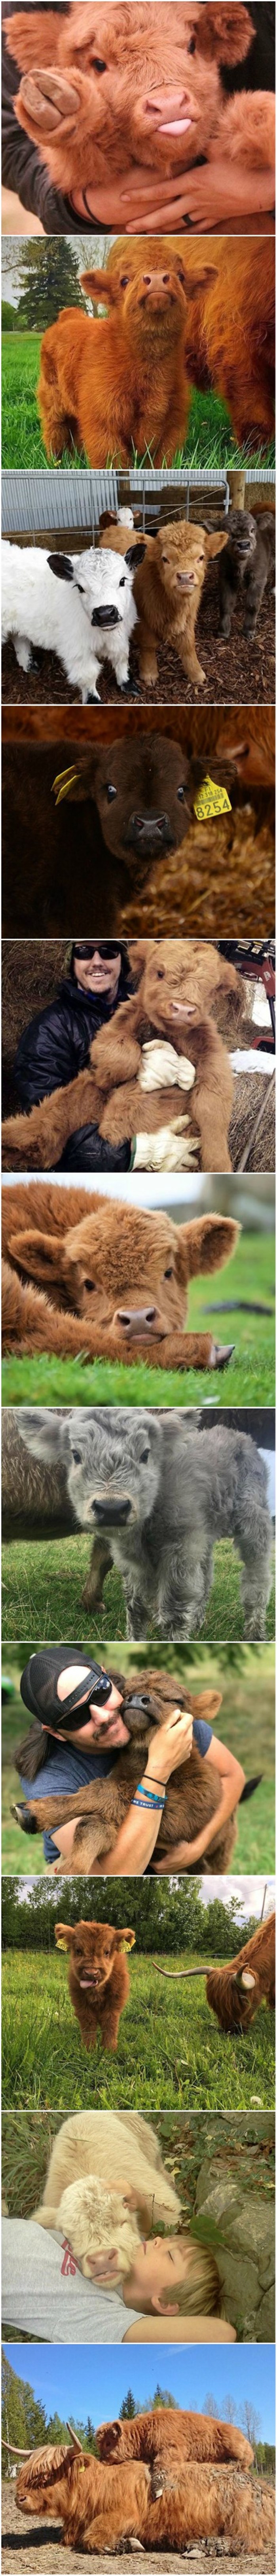 Ako se osjećate tužno, ove fotografije malih goveda će vas razveseliti